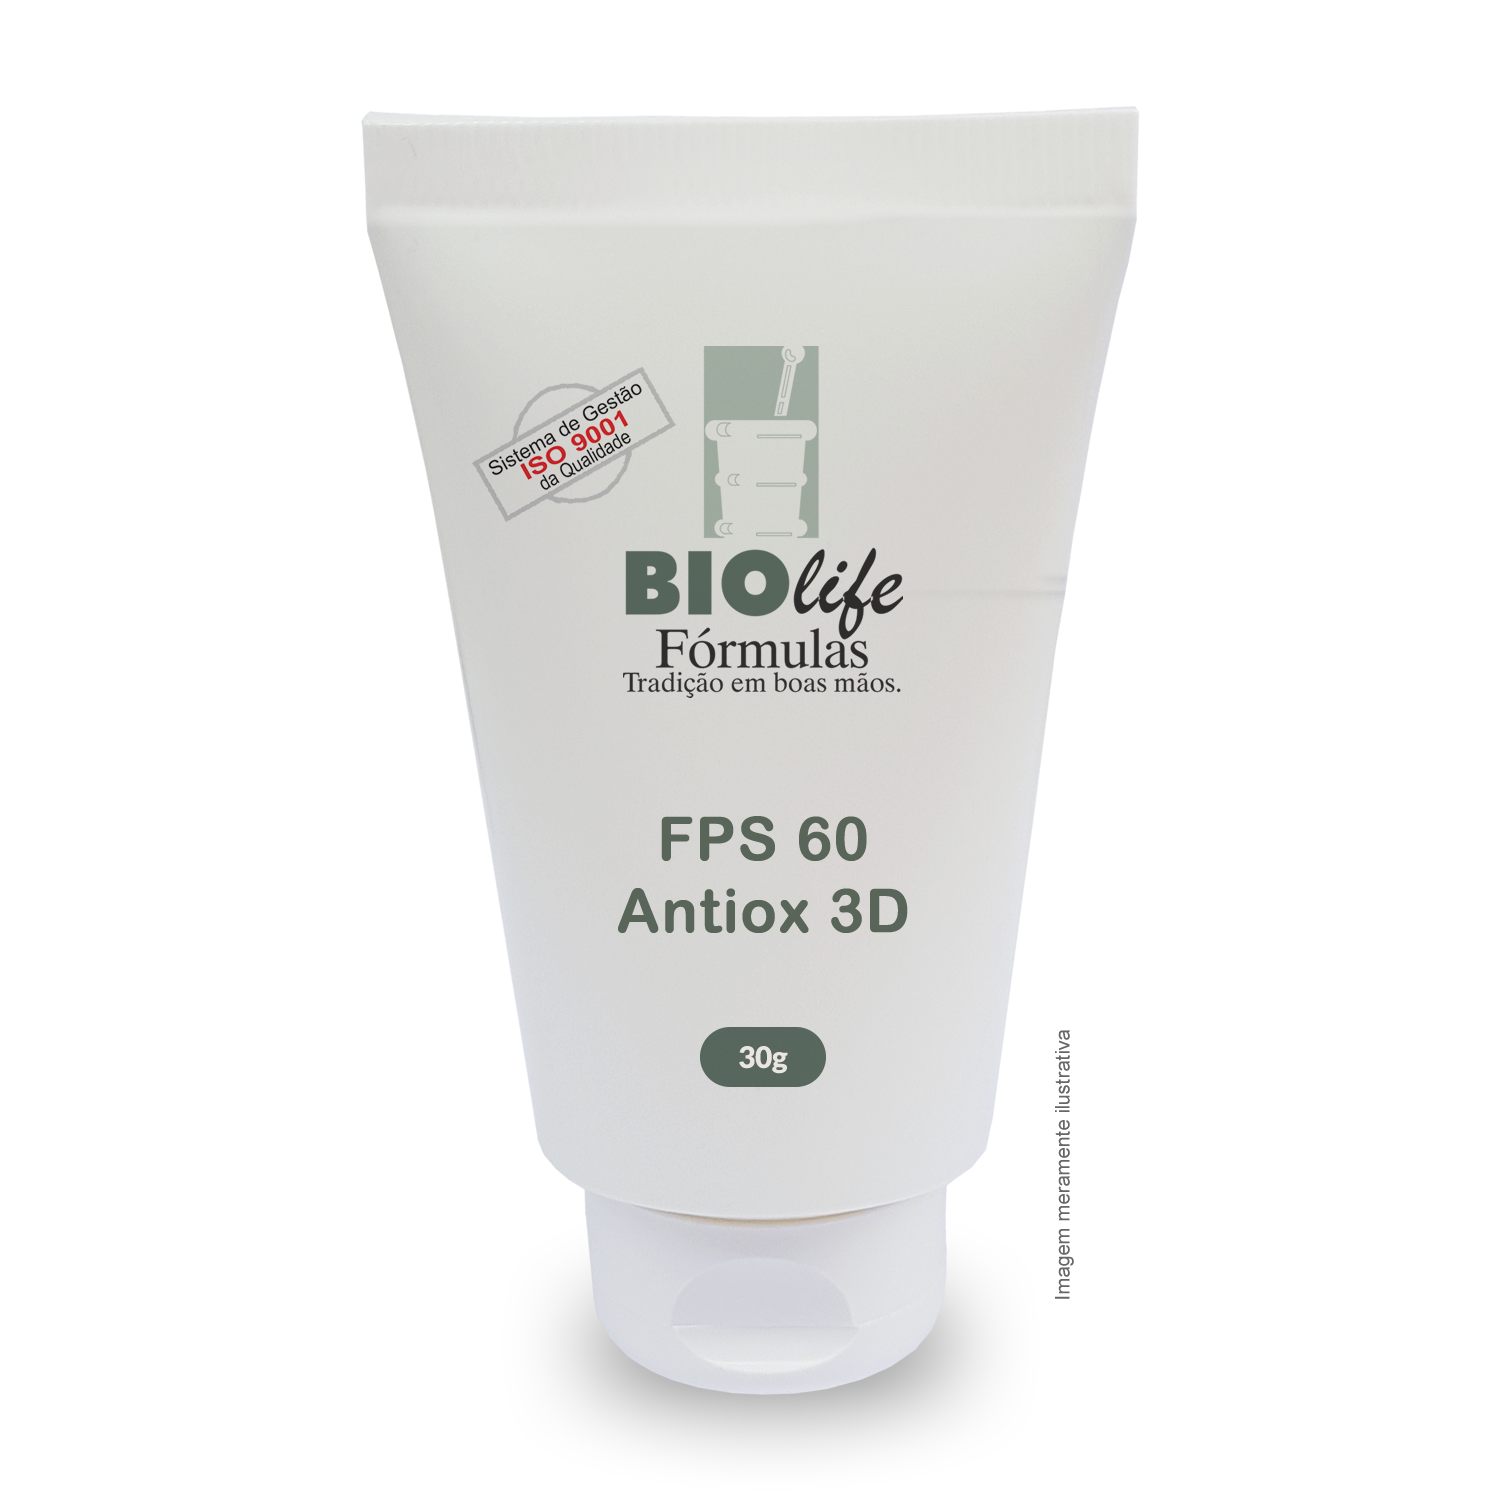 Alistin 1,5% + OTZ 10 2% + Phloretin 2% + FPS 60  Antiox 3D - BioLife